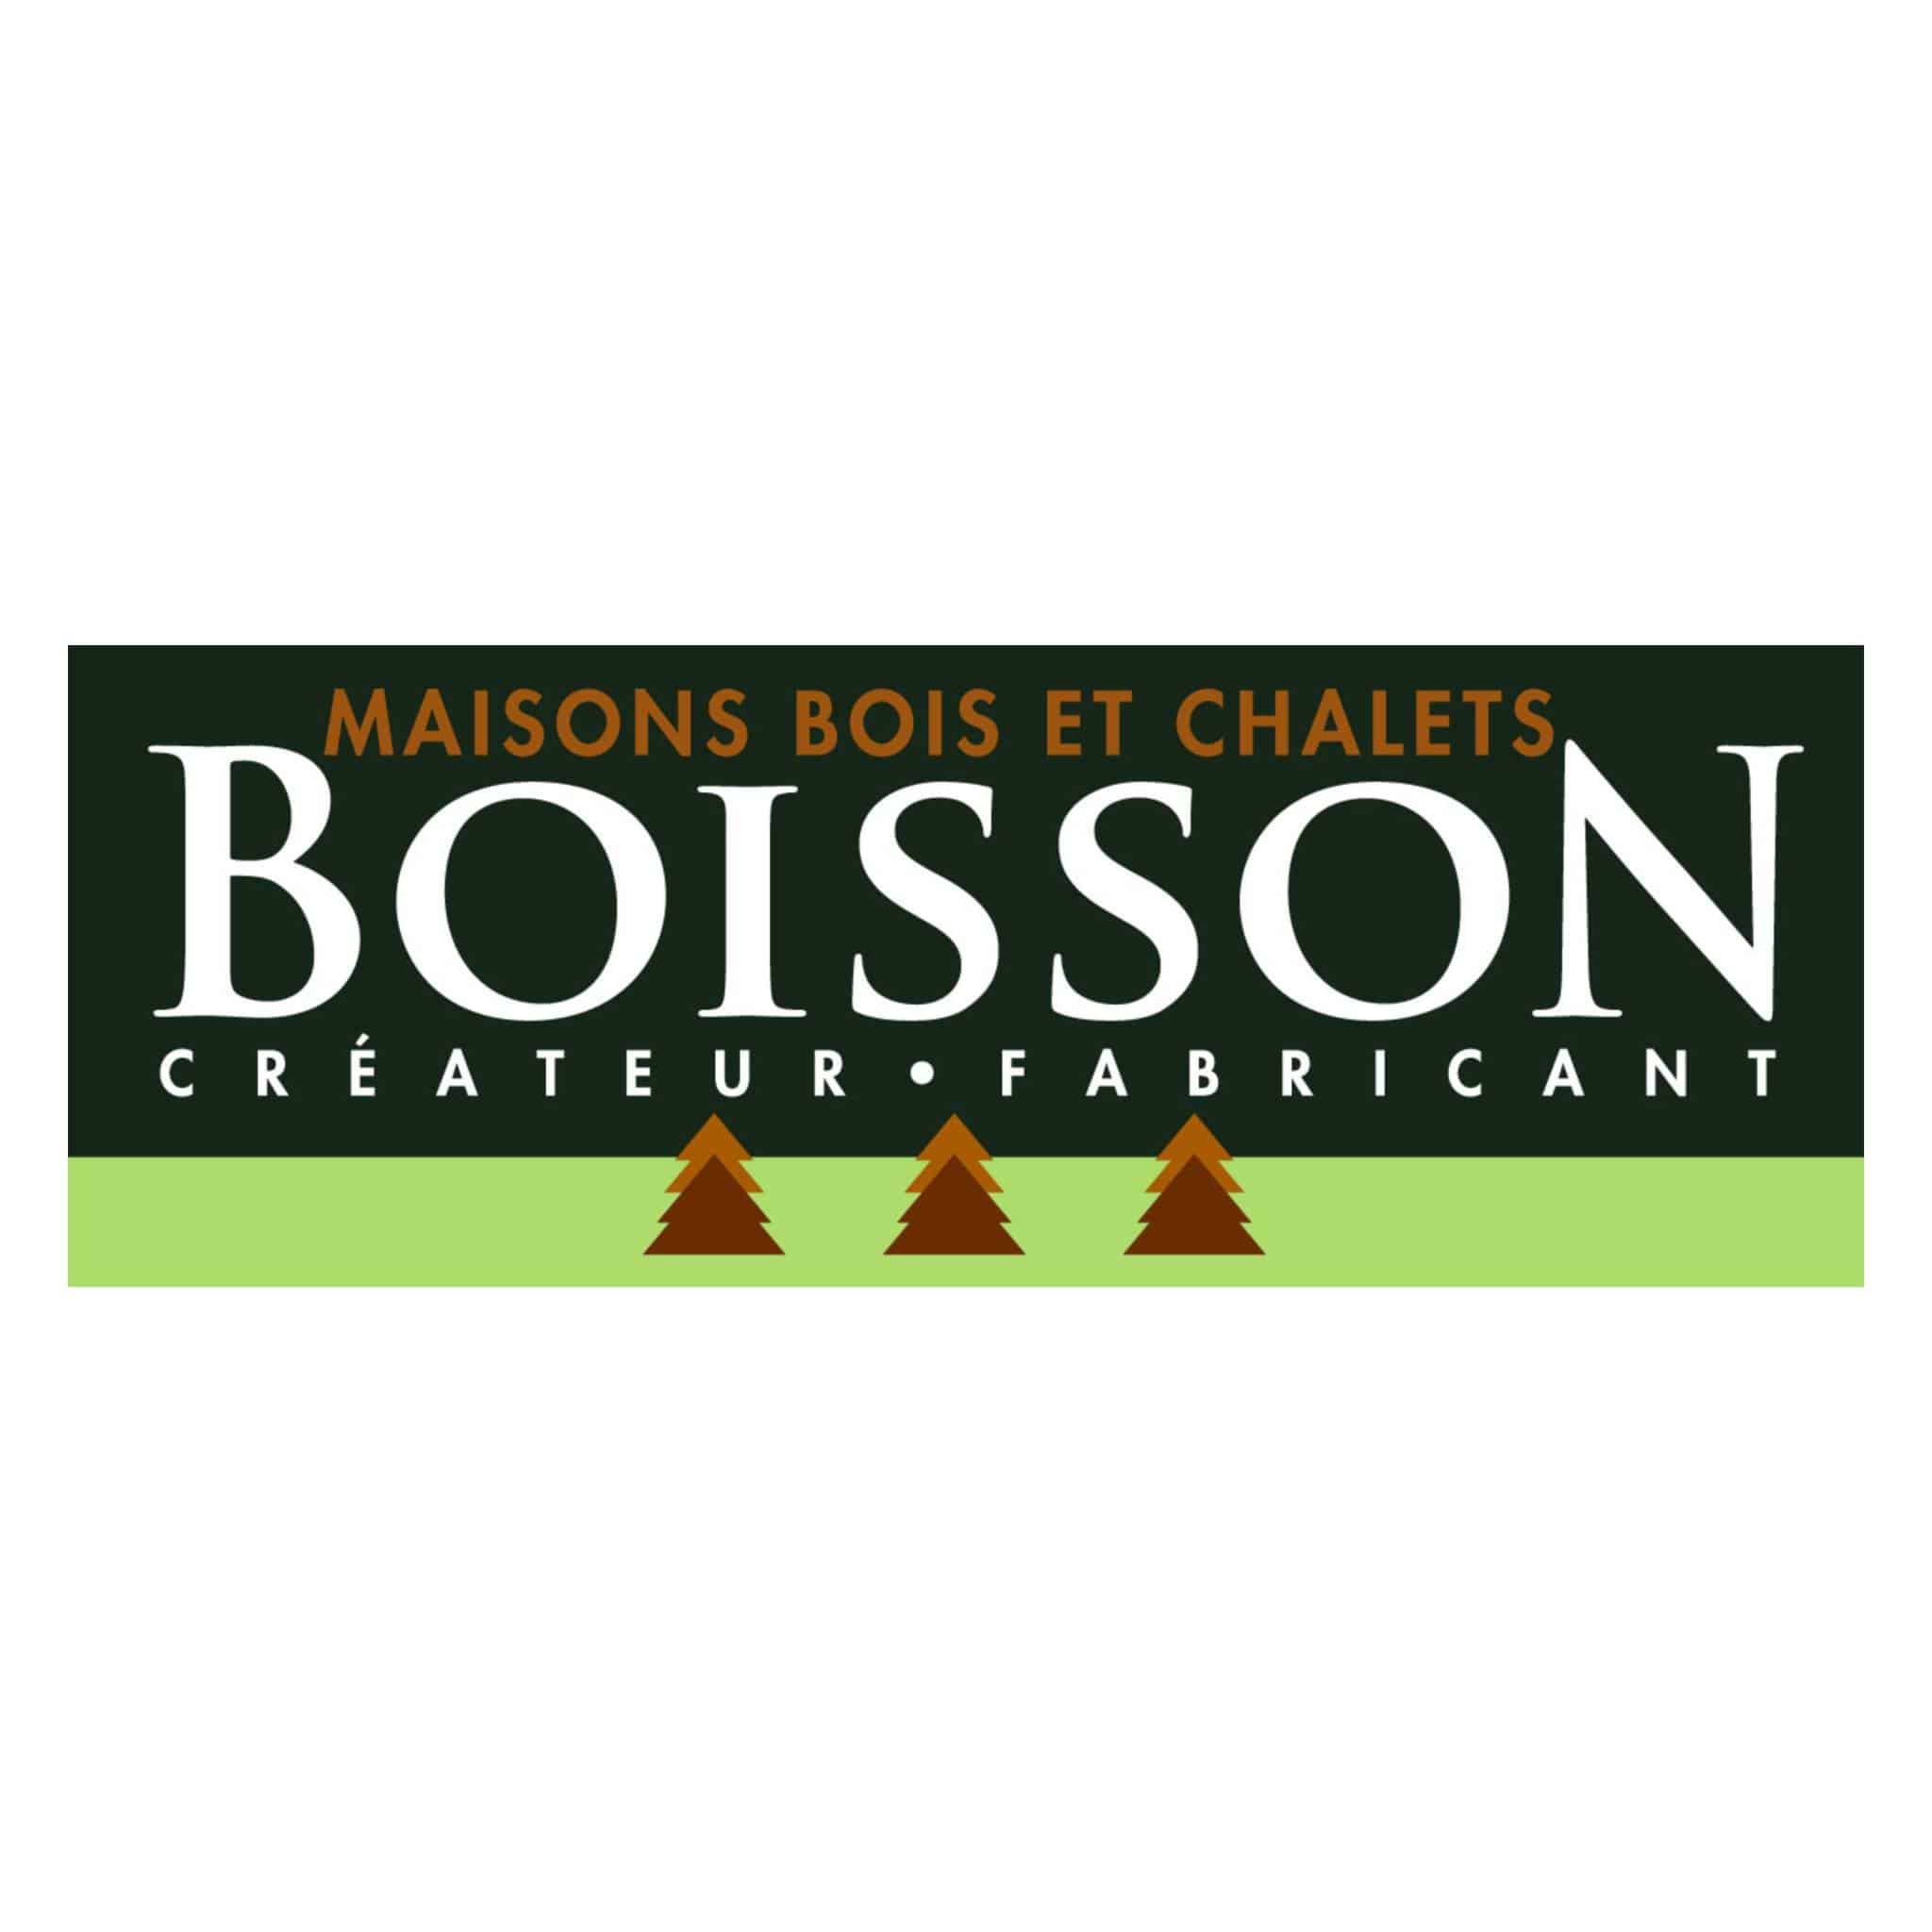 Maisons bois et chalets BOISSON - Créateur / Fabricant - Chalets Boisson